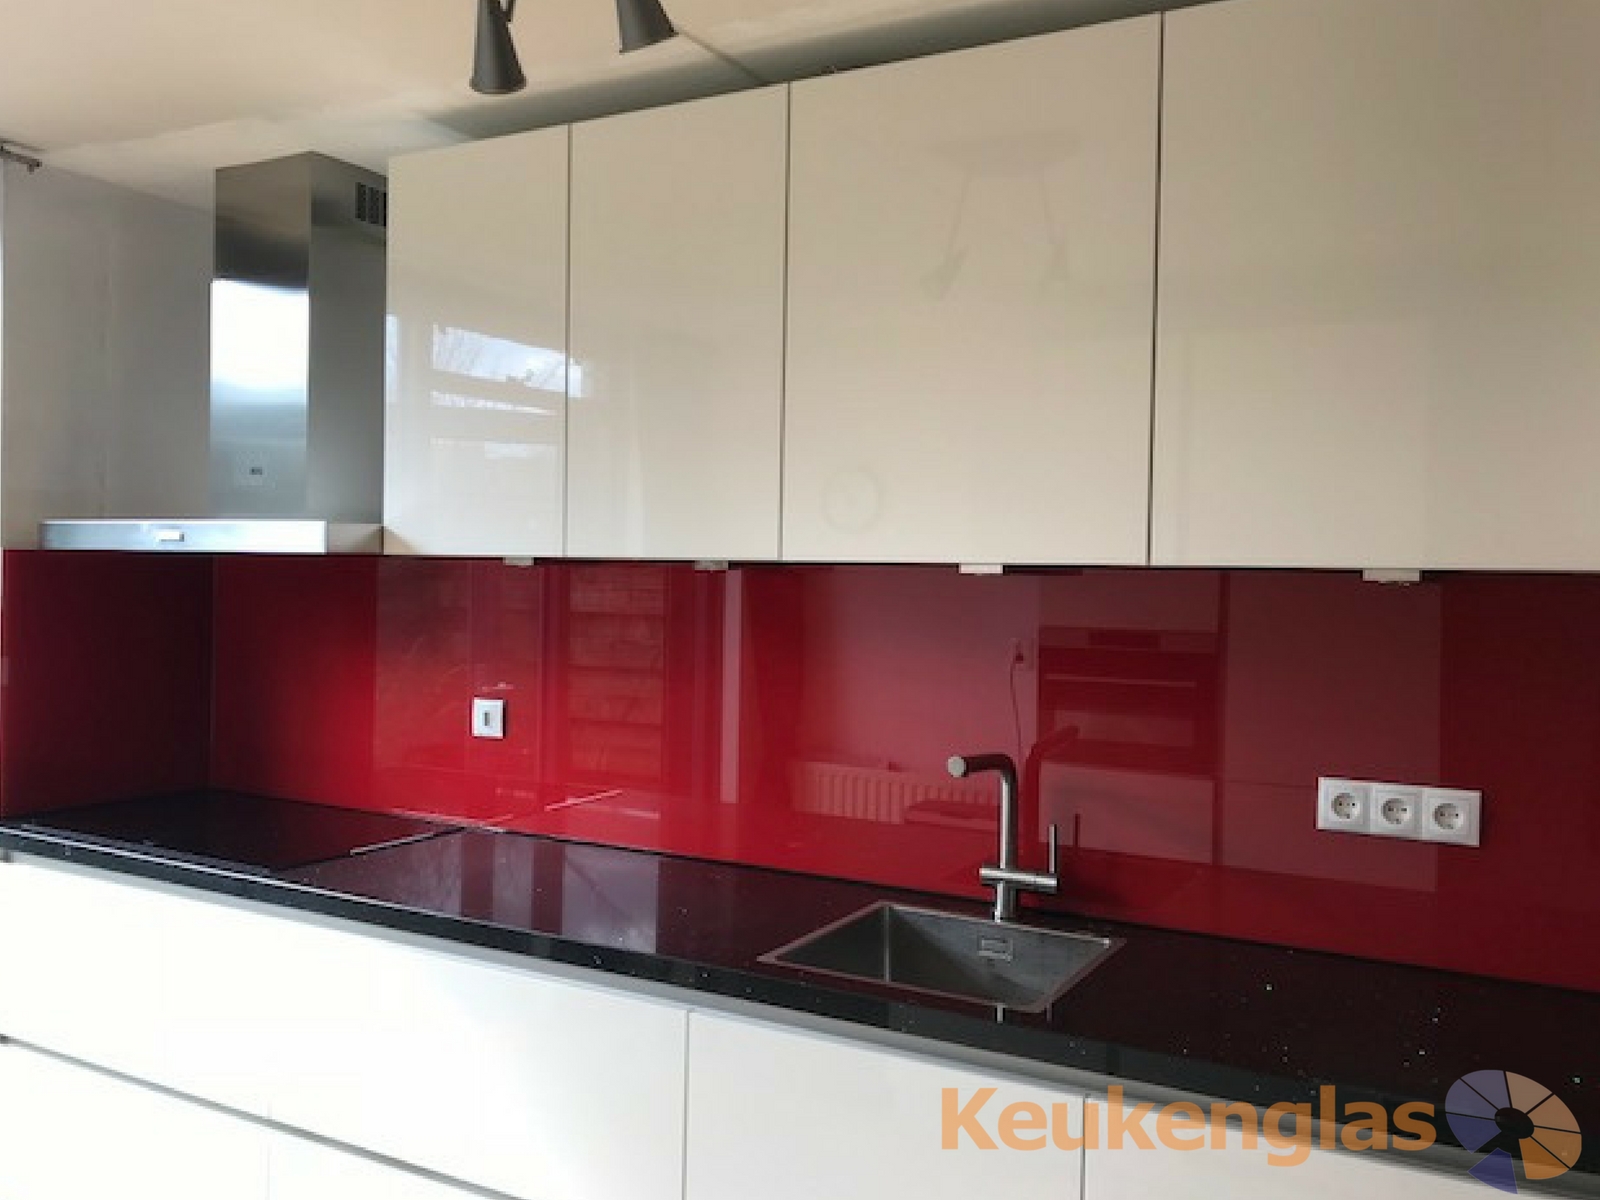 Foto: Achterwand rood glas met witte keuken